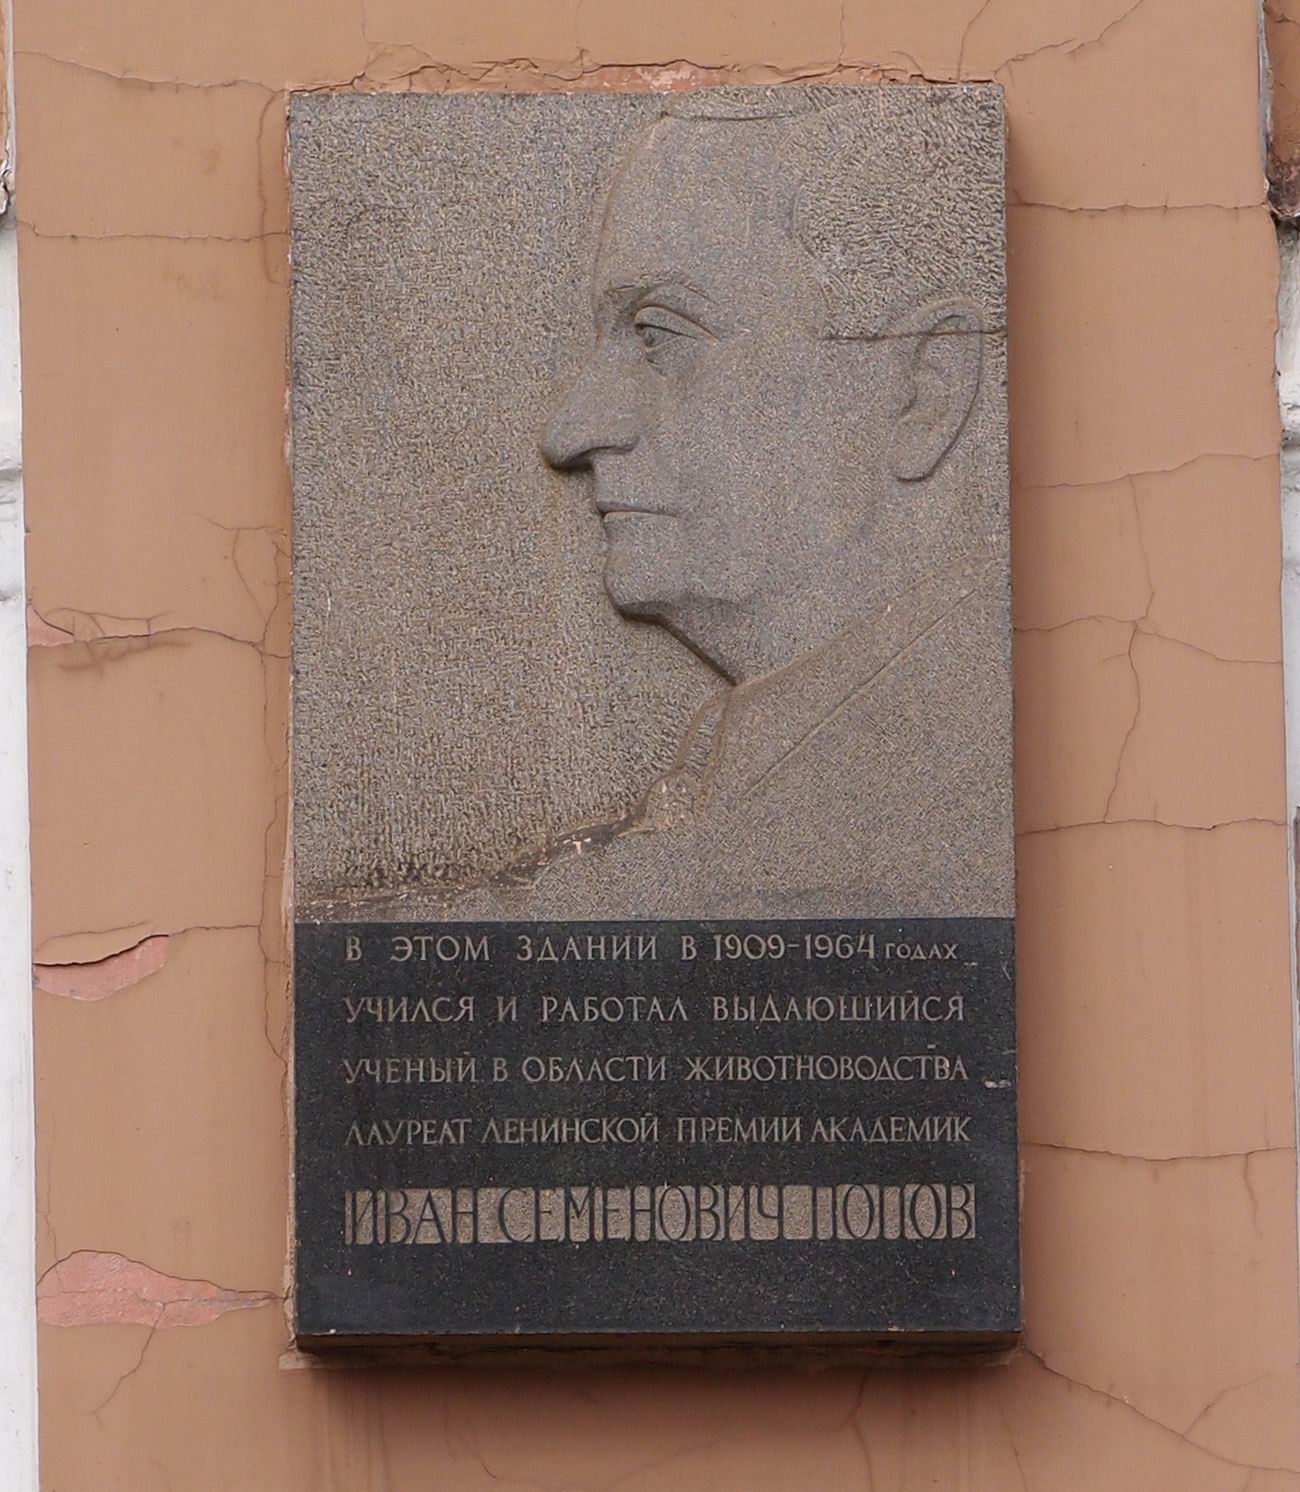 Мемориальная доска Попову И.С. (1888-1964), на Тимирязевской улице, дом 54, открыта в 1966.